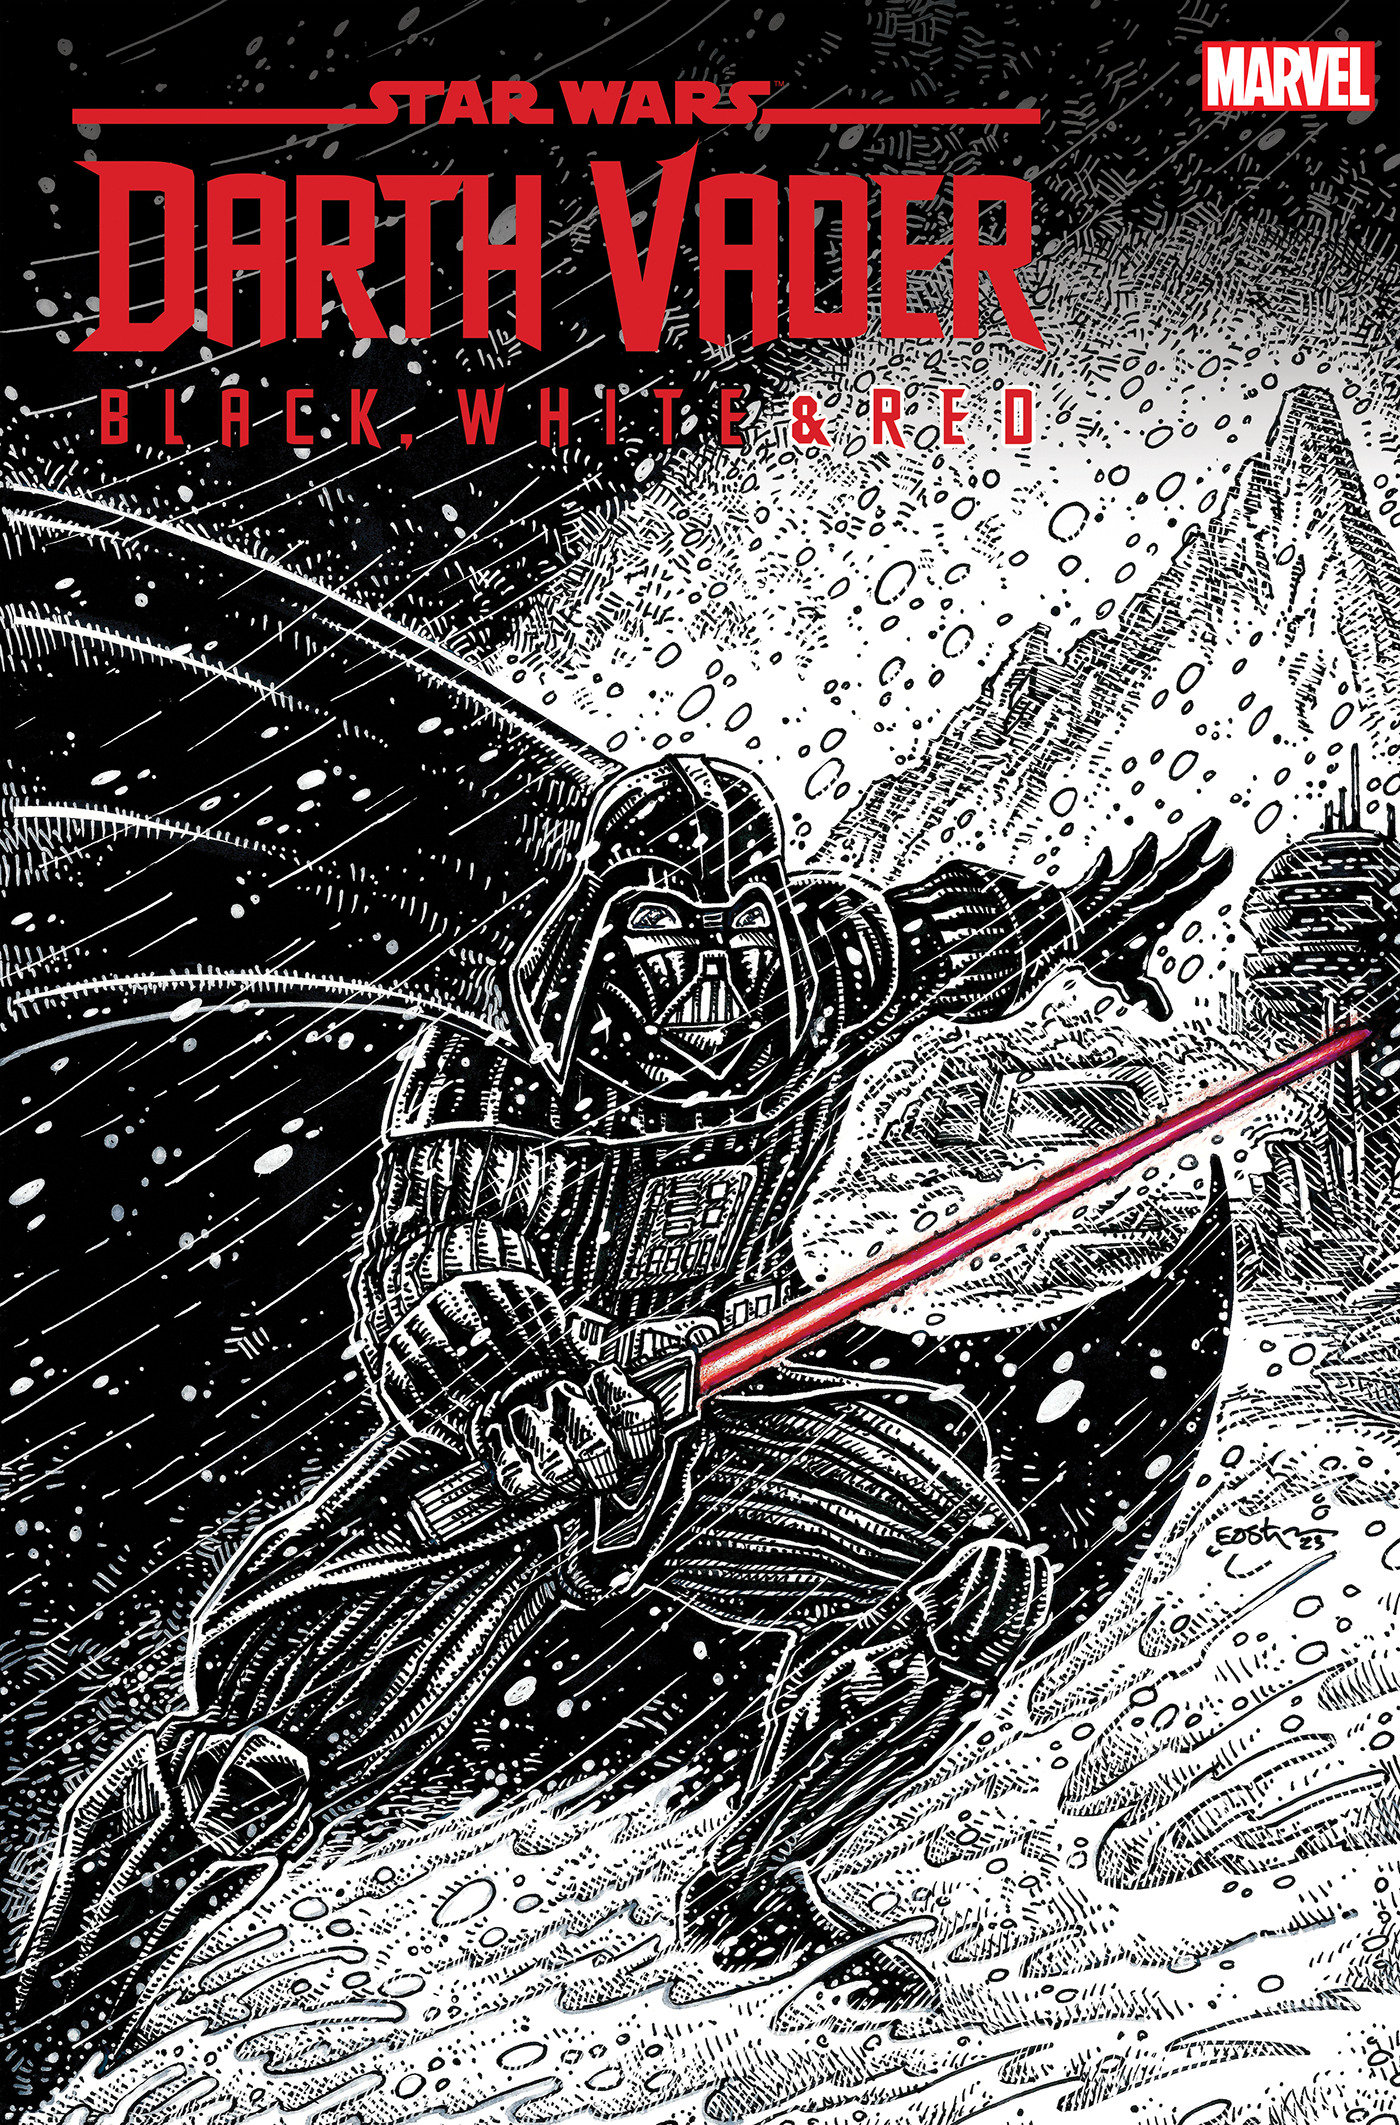 Star Wars: Darth Vader - Black, White & Red #4 Kevin Eastman 1 for 25 Incentive Variant